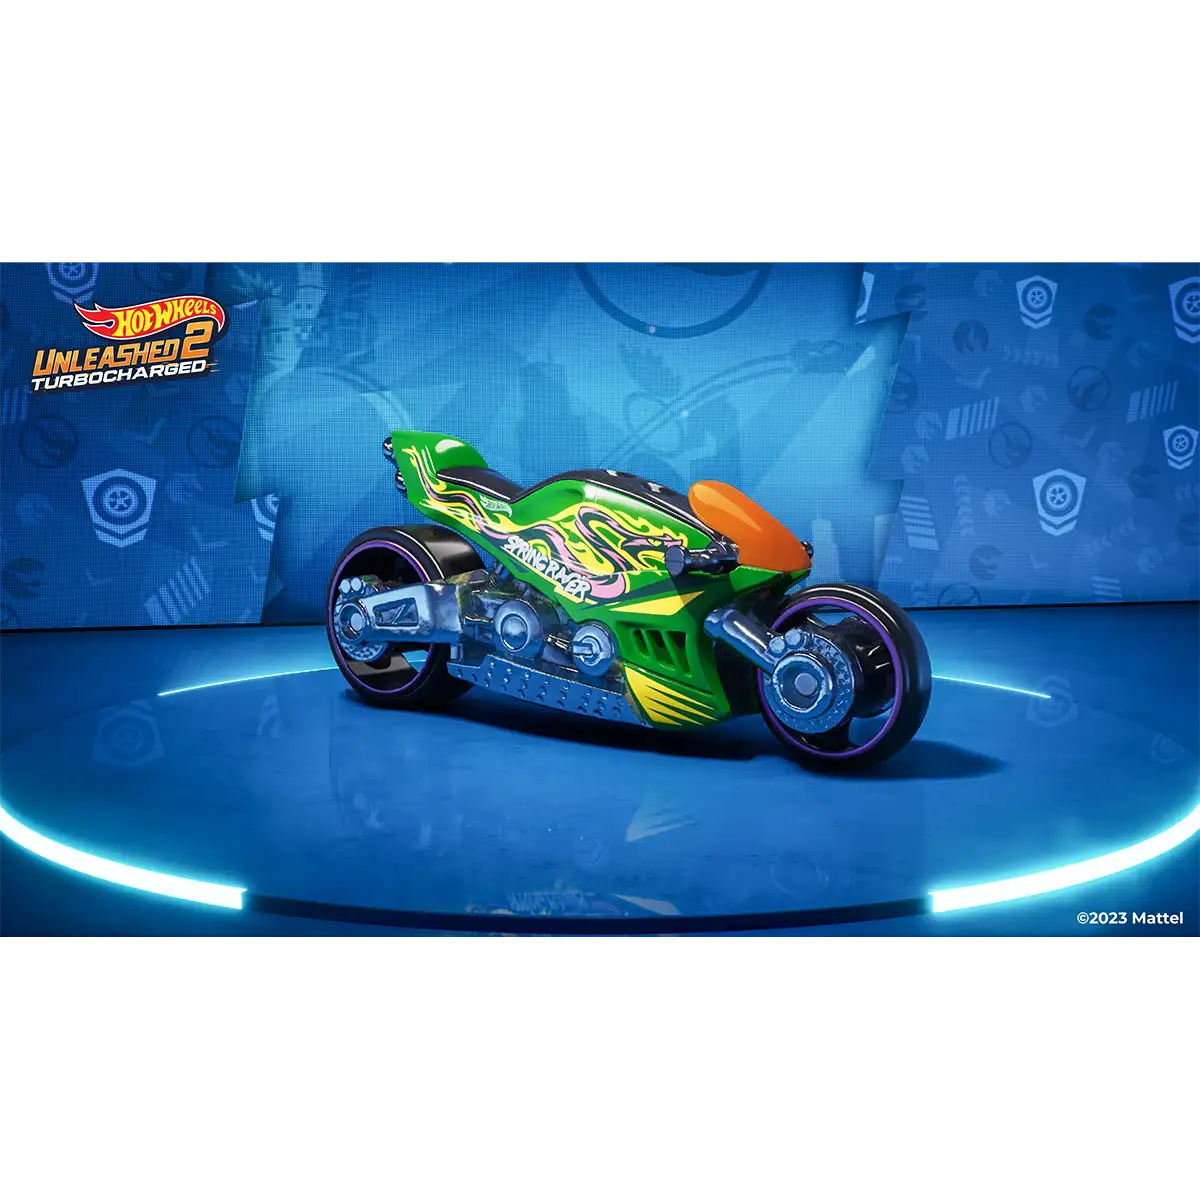 Hot Wheels Unleashed™ 2 Turbocharged (PS5) Image 4